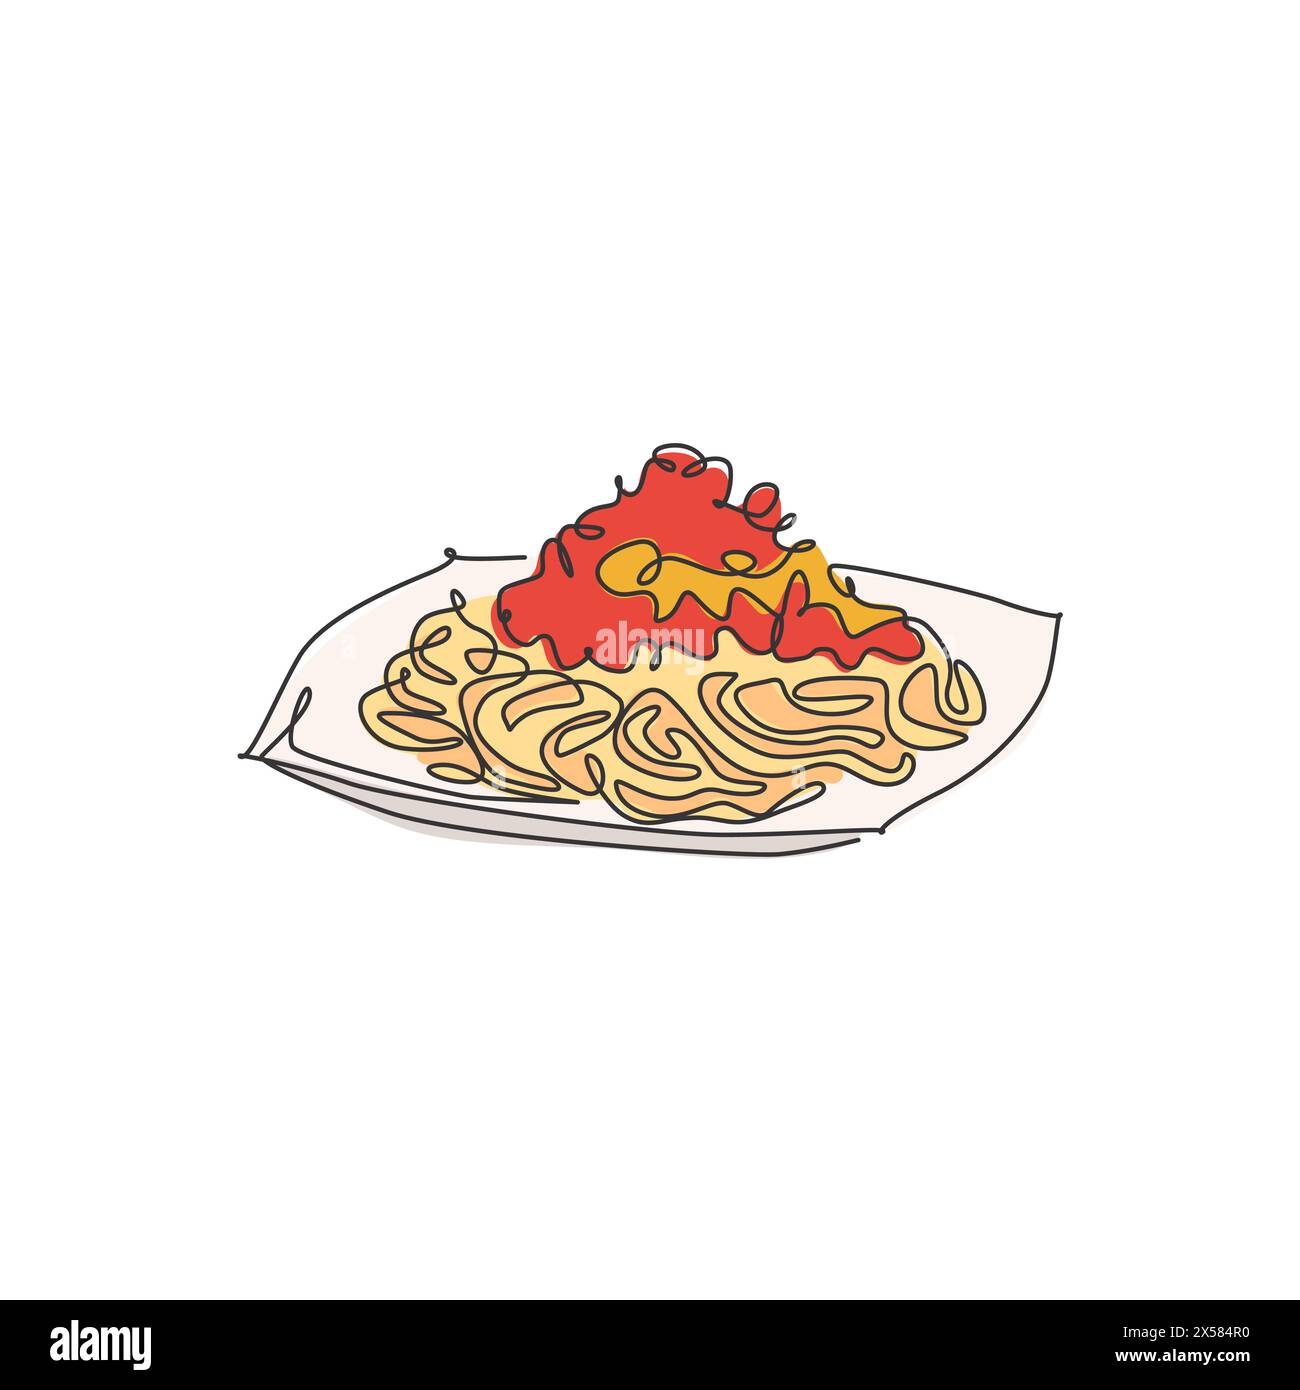 Disegno a linea singola di deliziosi spaghetti italiani con logo. Concetto di ristorante con pasta e spaghetti. Moderno design vettoriale a una linea Illustrazione Vettoriale